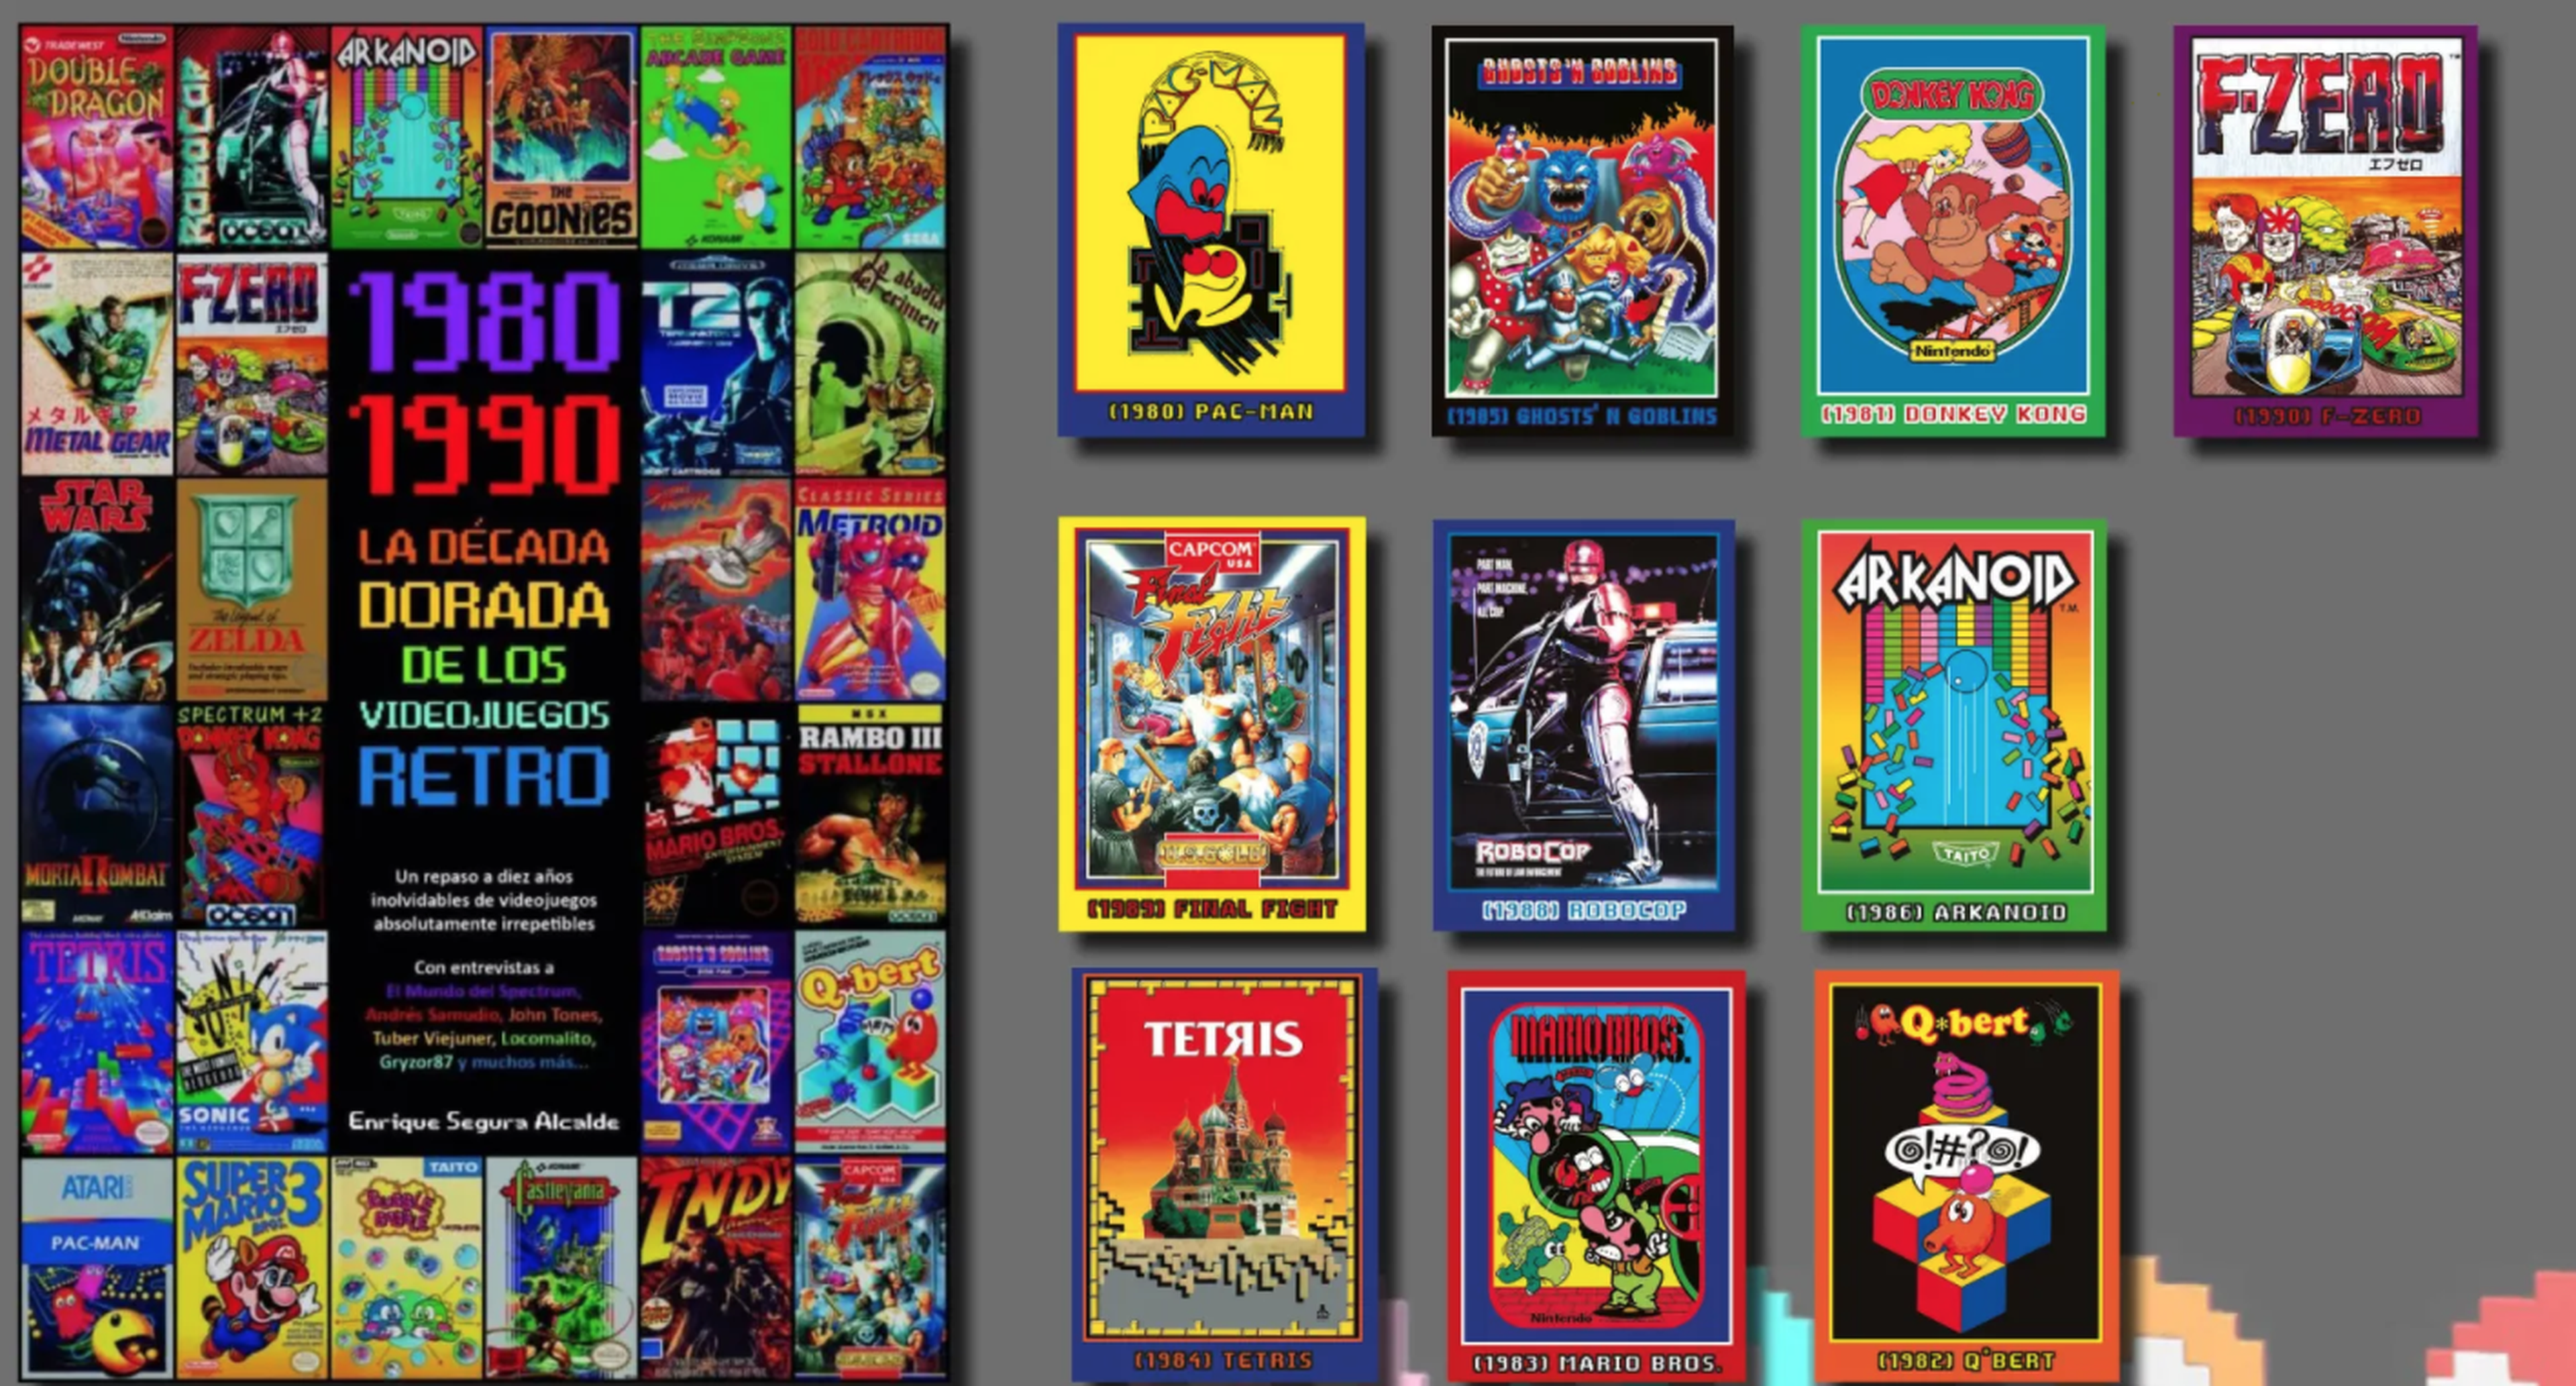 1980-1990 La década dorada de los videojuegos retro, el libro con